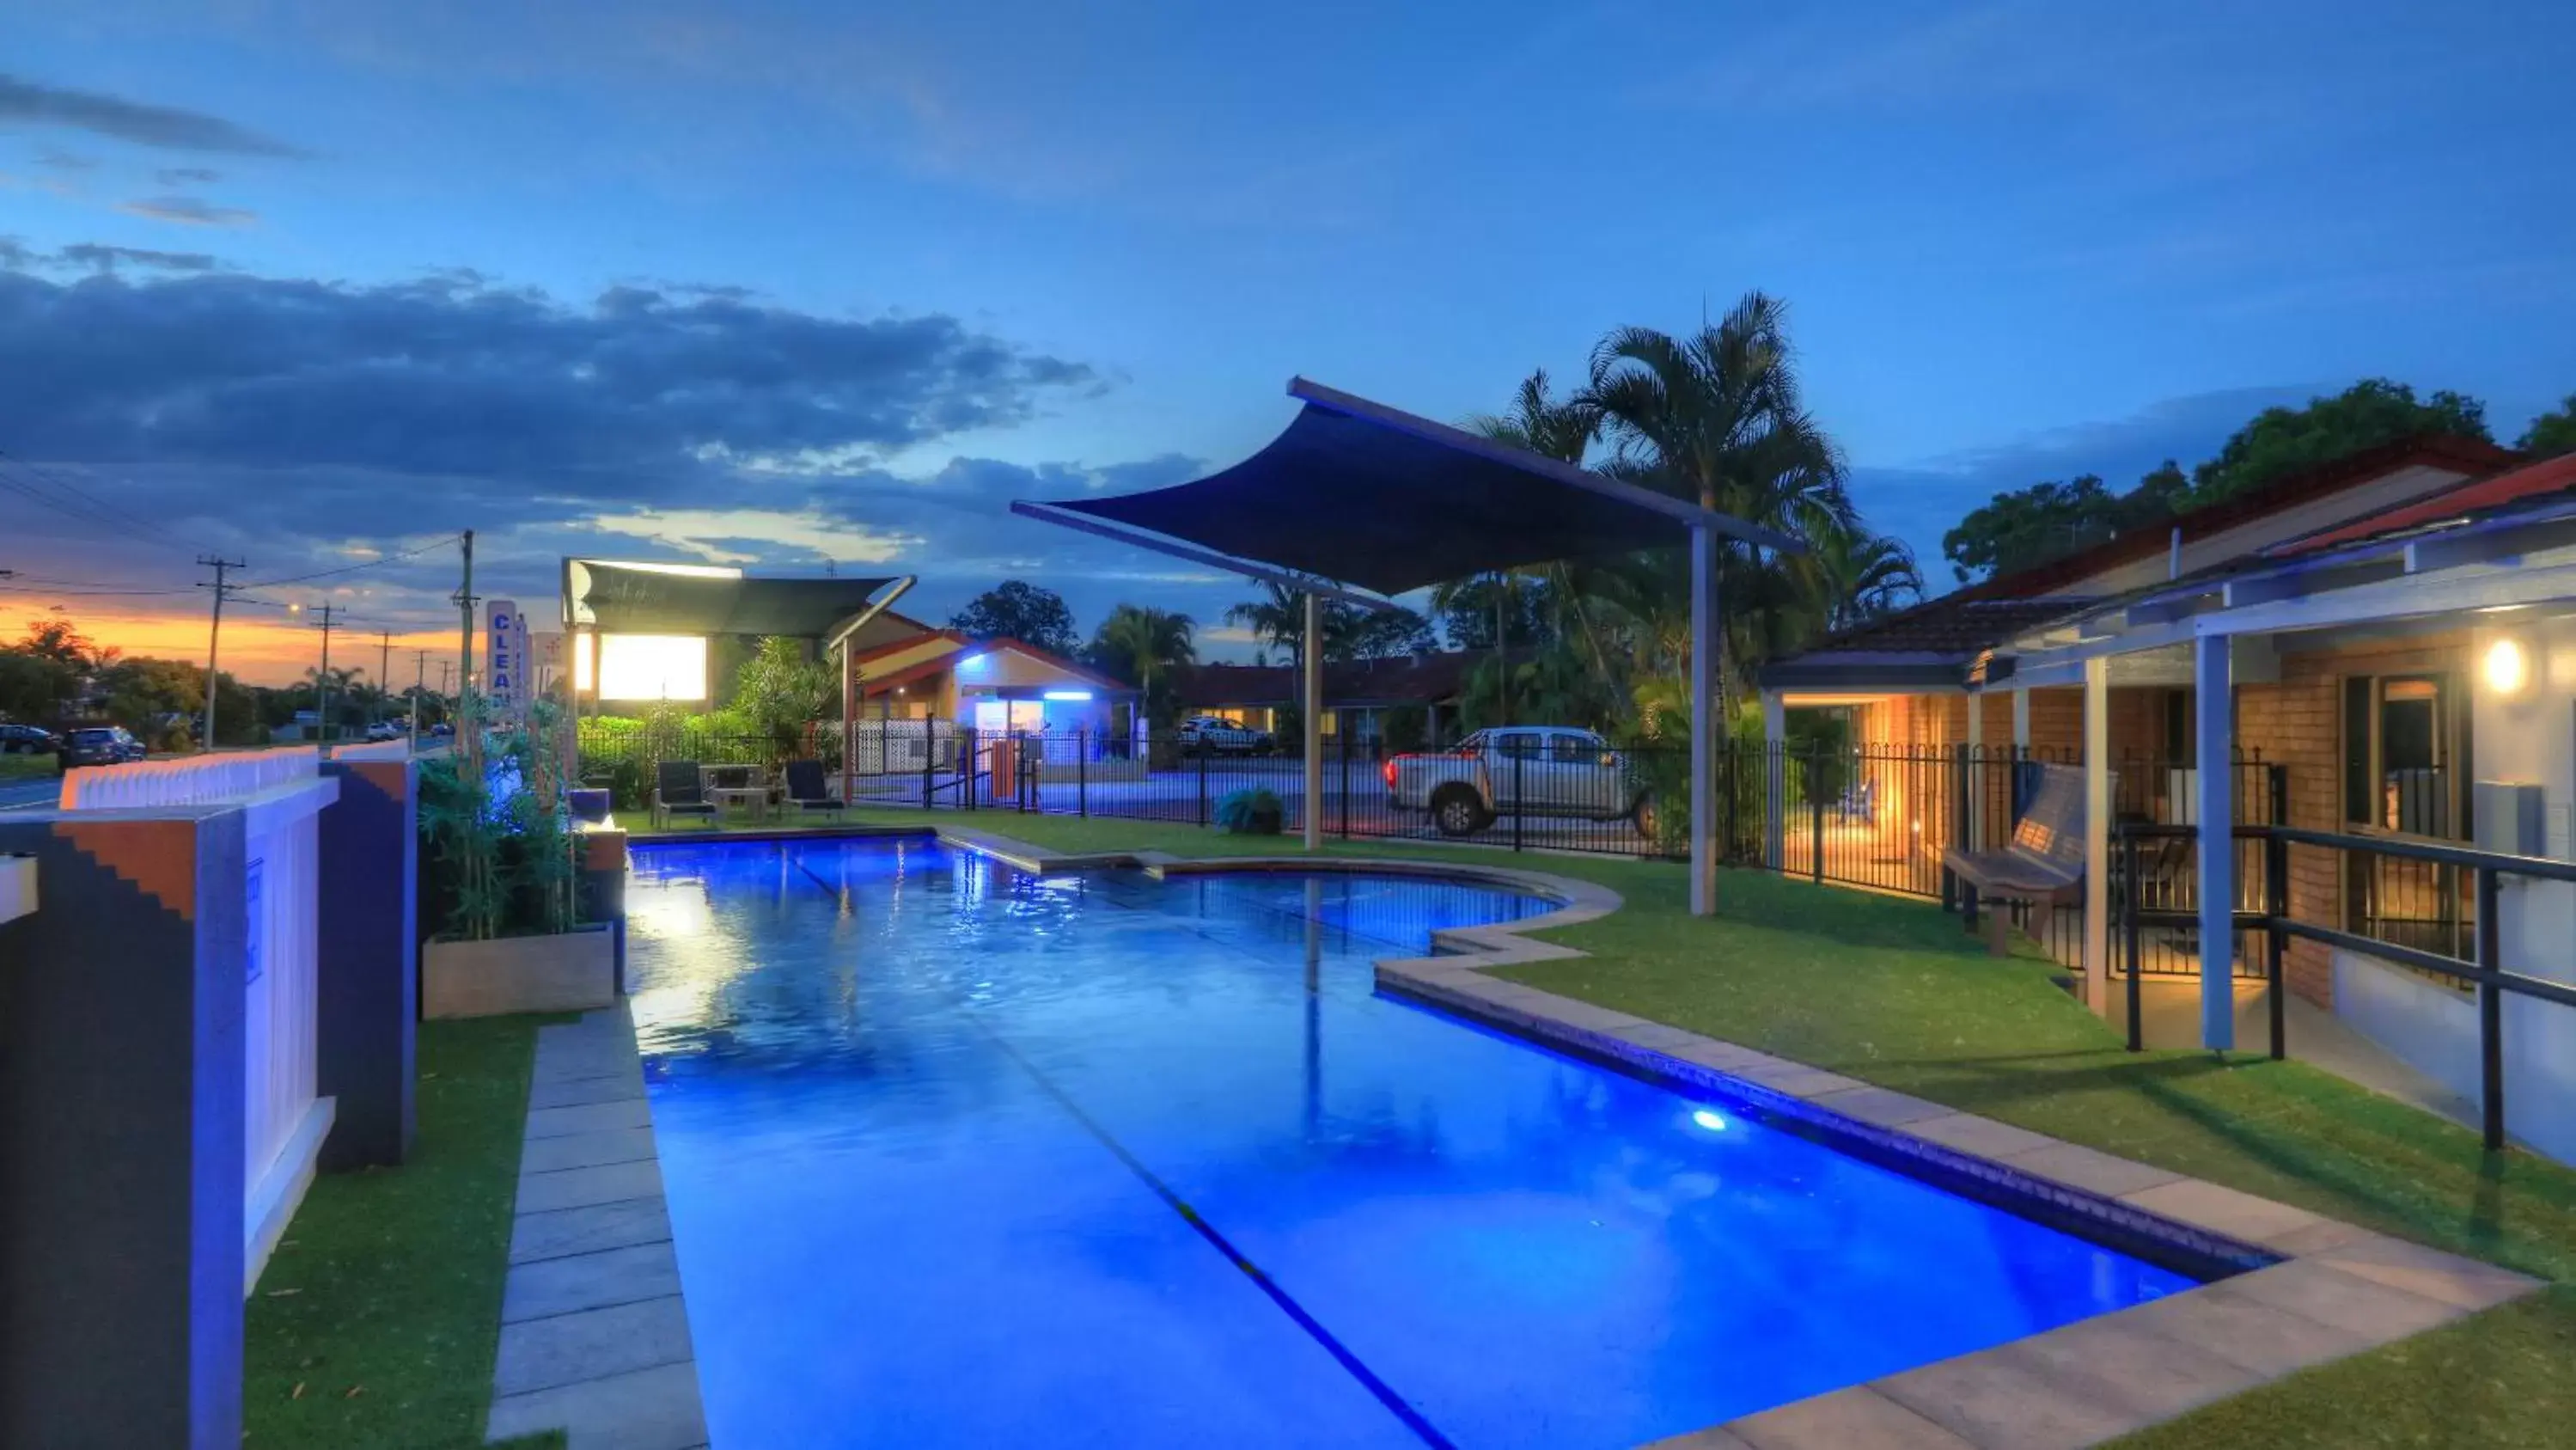 Property building, Swimming Pool in Yamba Motor Inn